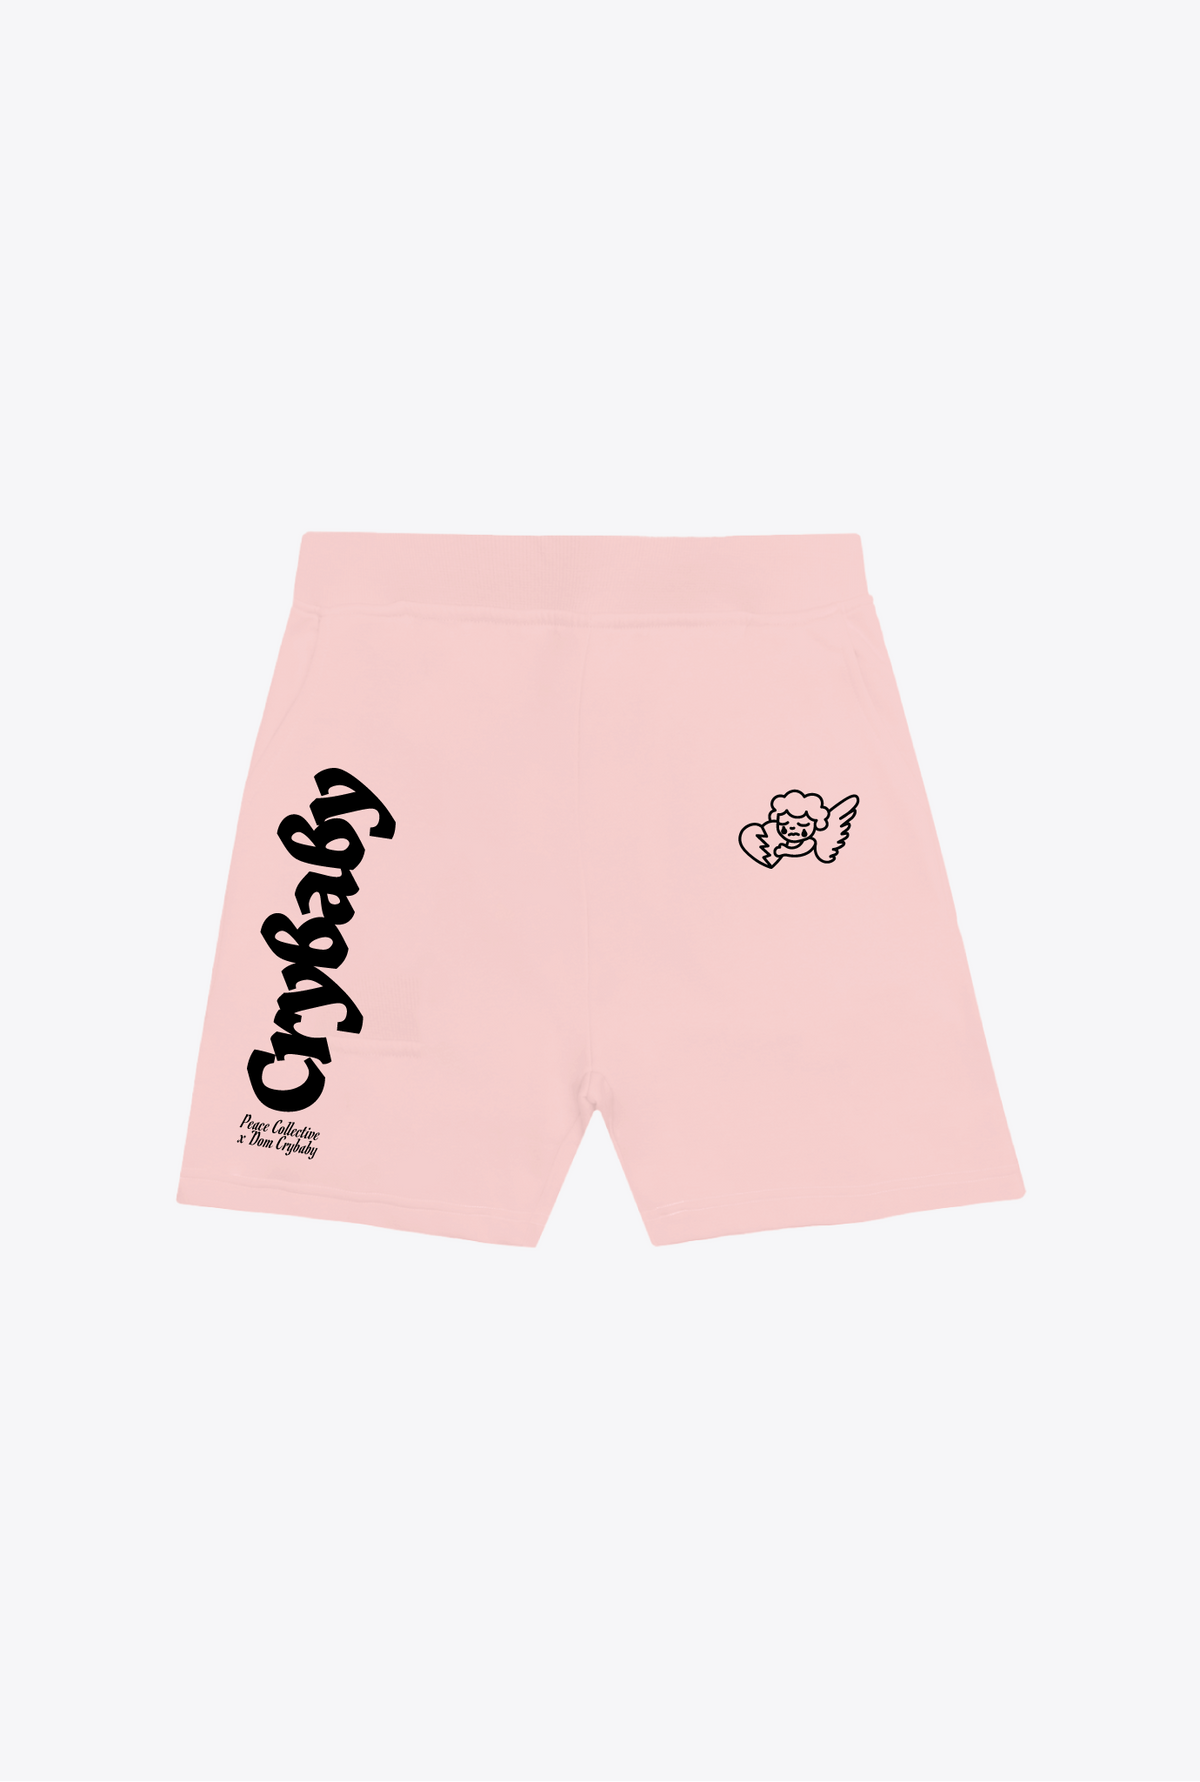 Crybaby Shorts - Pink